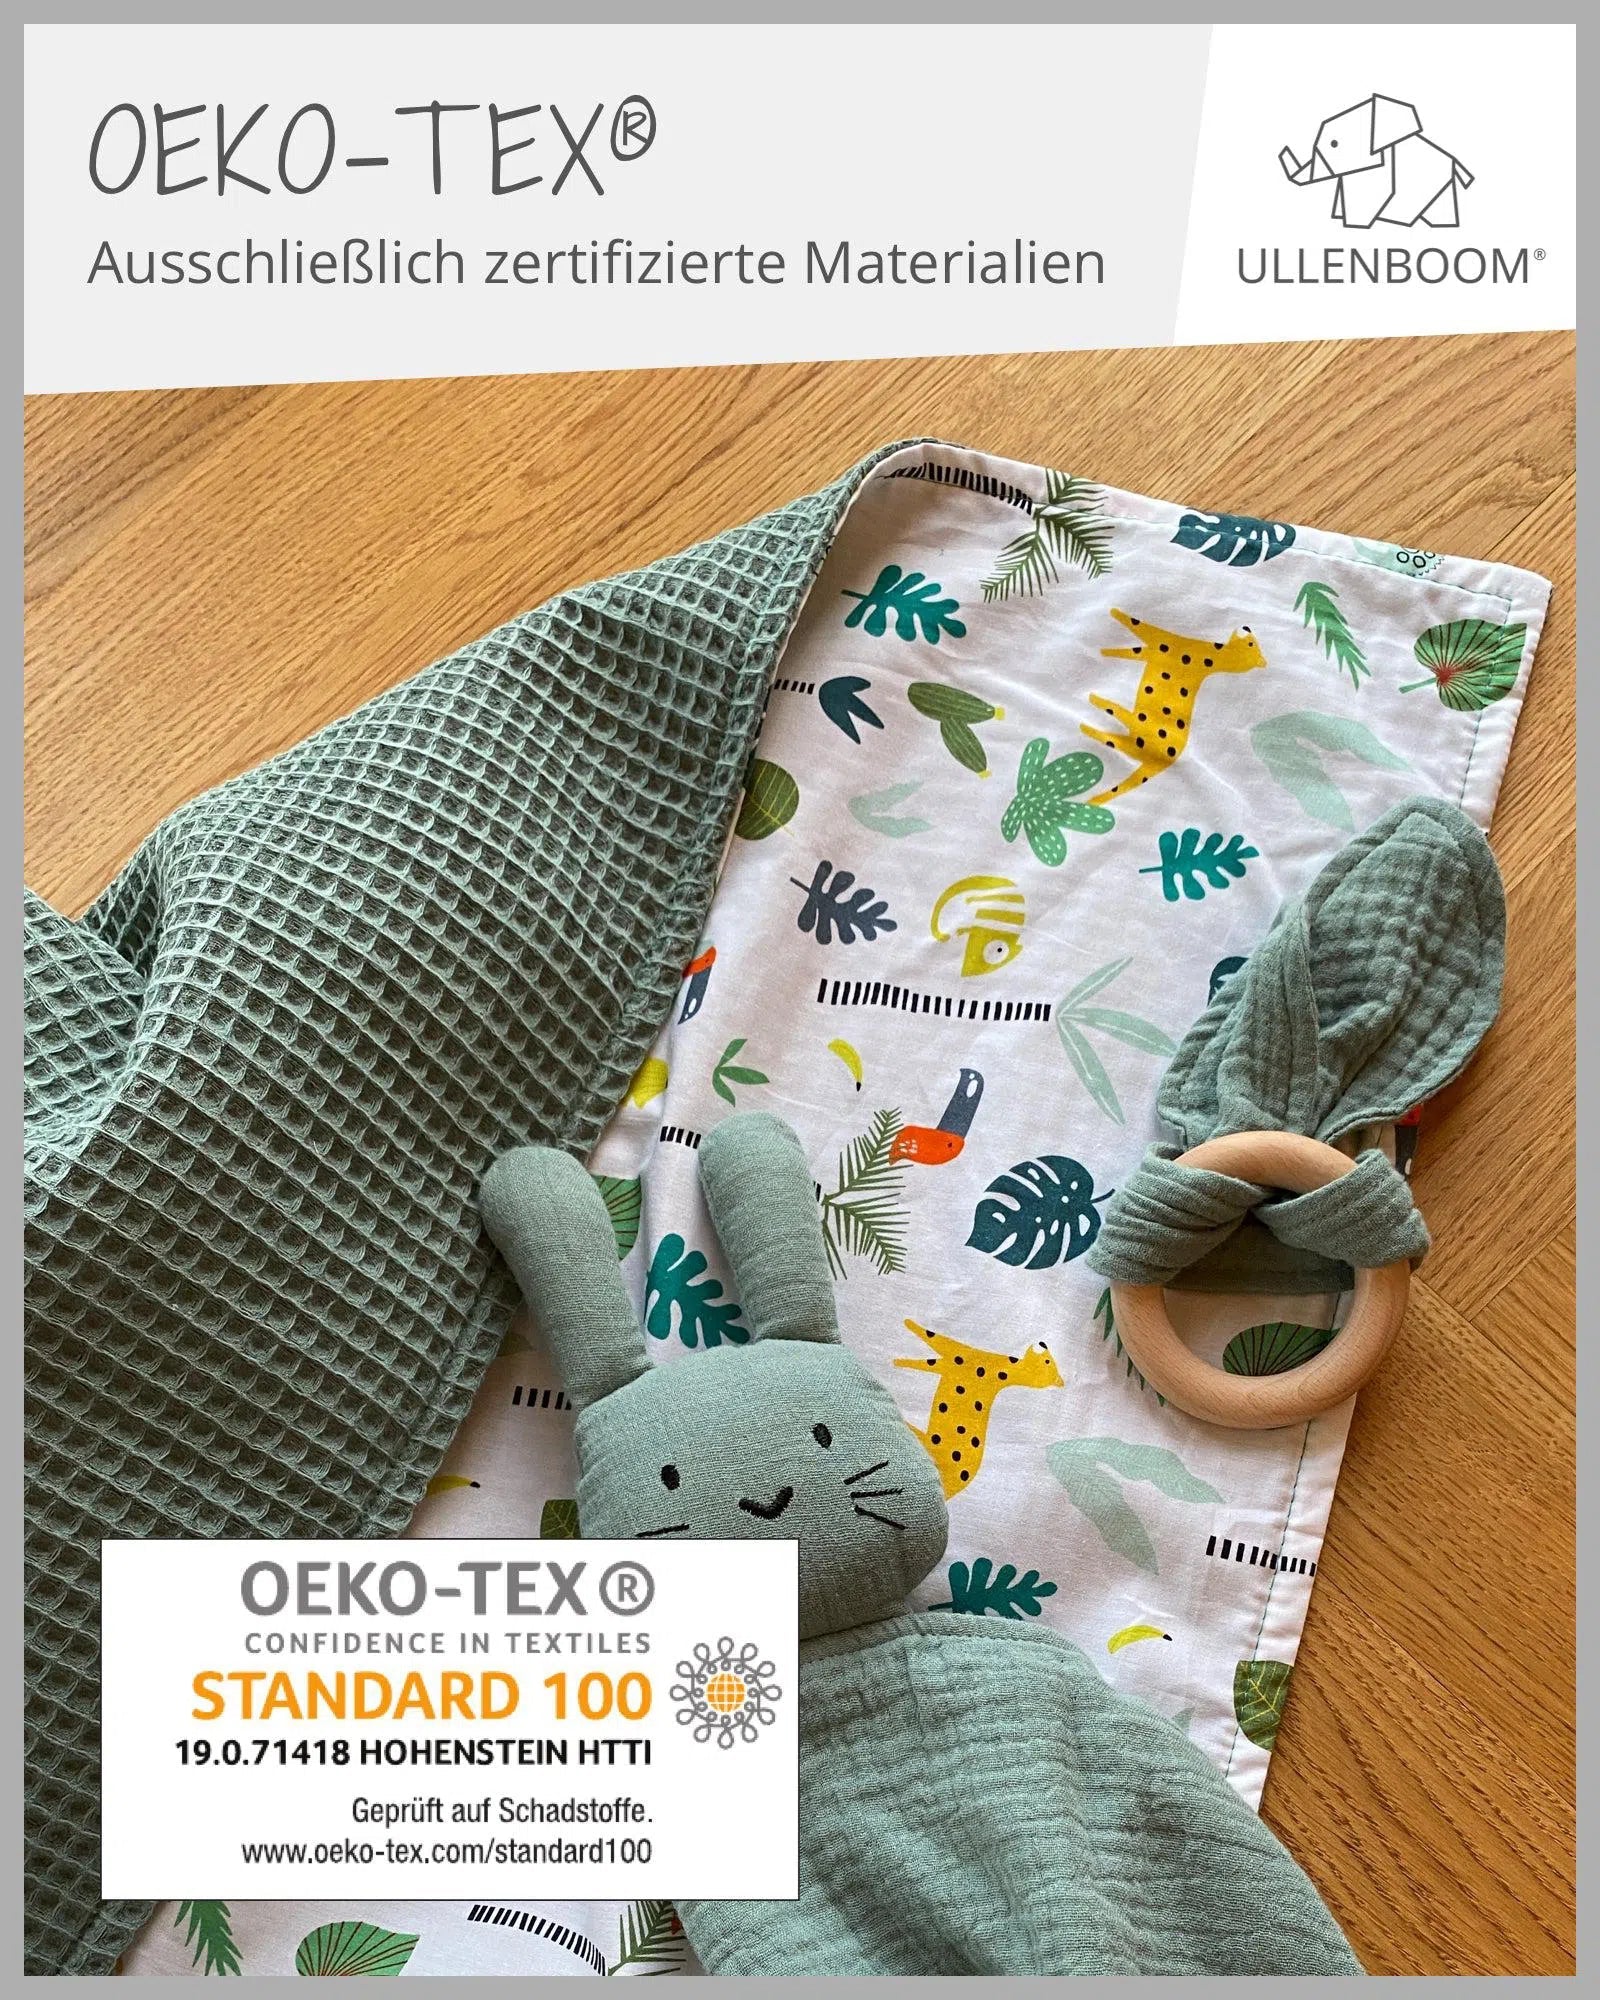 Babydecke & Kuscheldecke Waffelpiqué SALBEIGRÜN REGENWALD-ULLENBOOM-70 x 100 cm-ULLENBOOM Baby